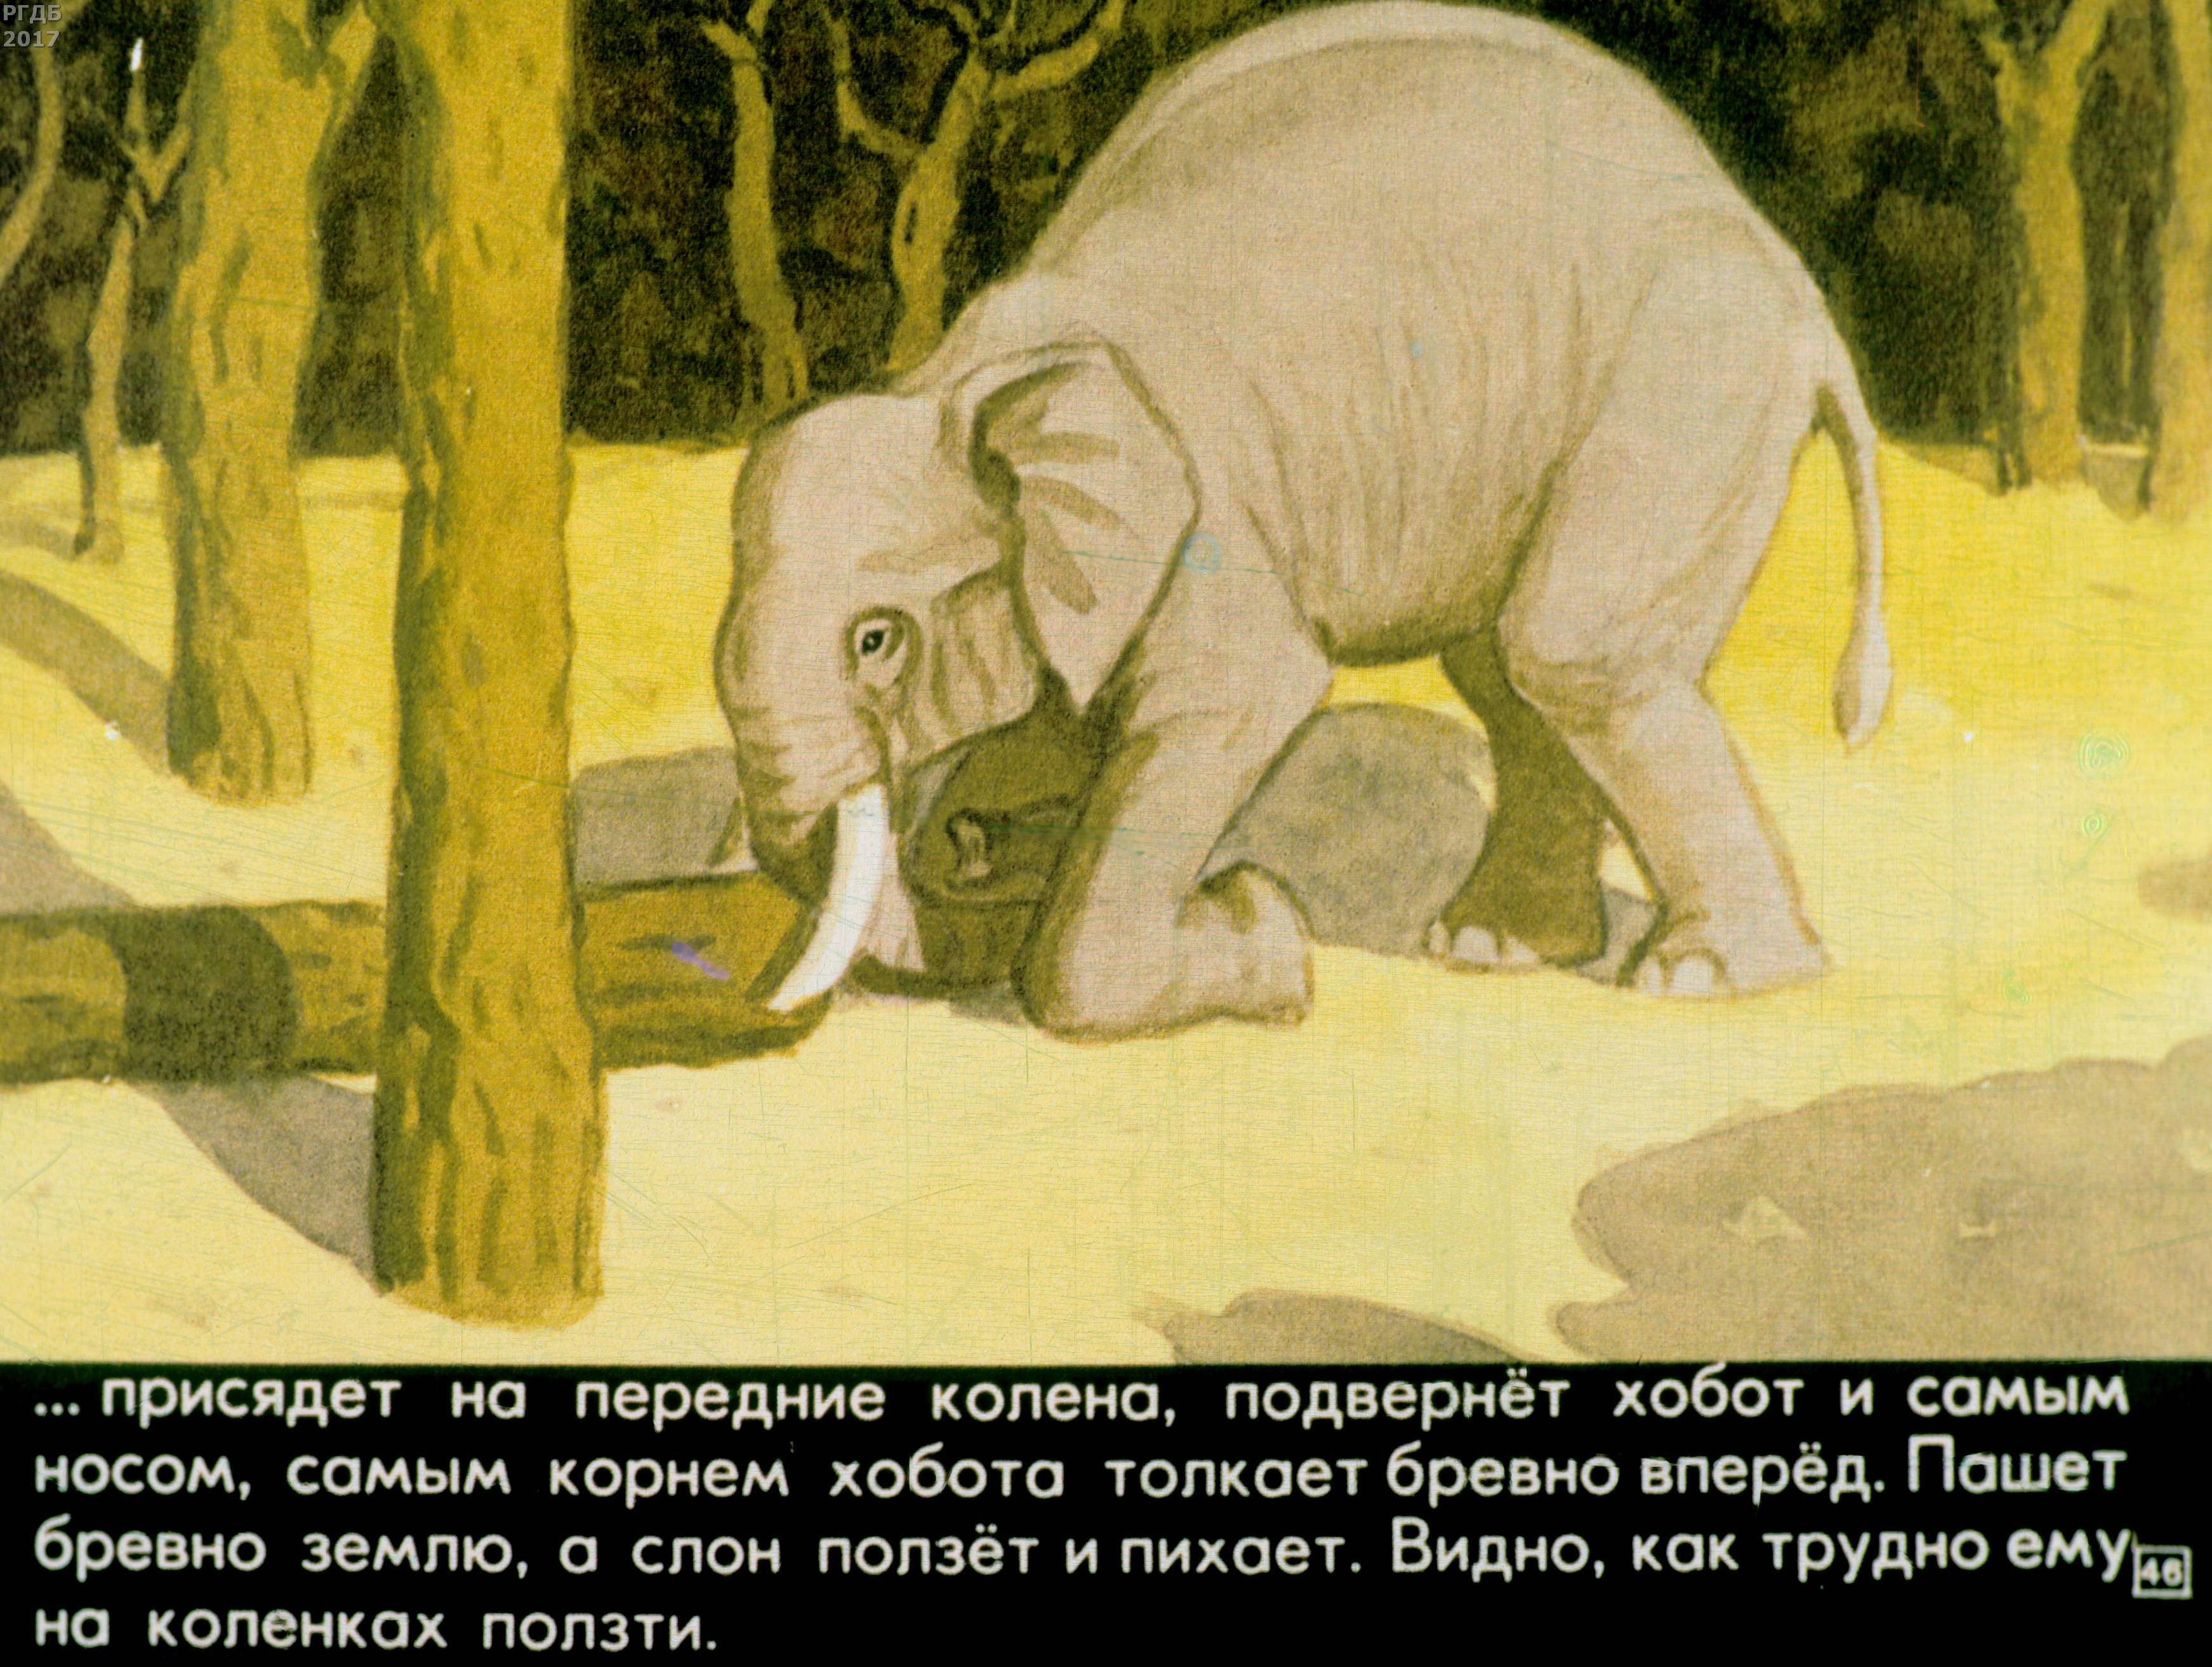 Читать про слона. Рассказ про слона Житков. Рассказ Житкова про слона.